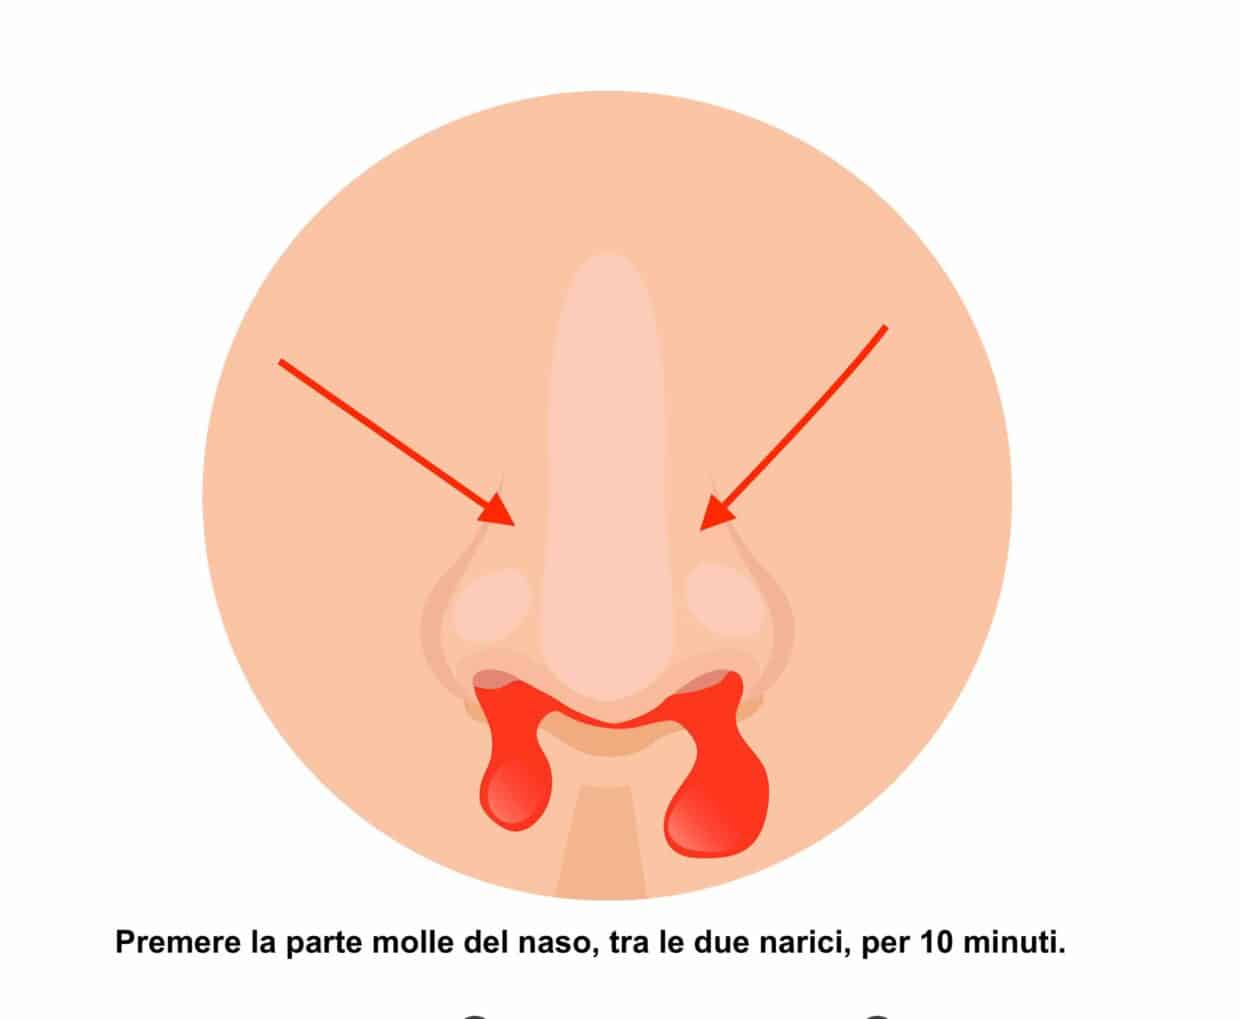 Premere la parte molle del naso tra le due narici per fermare il sangue dal naso.